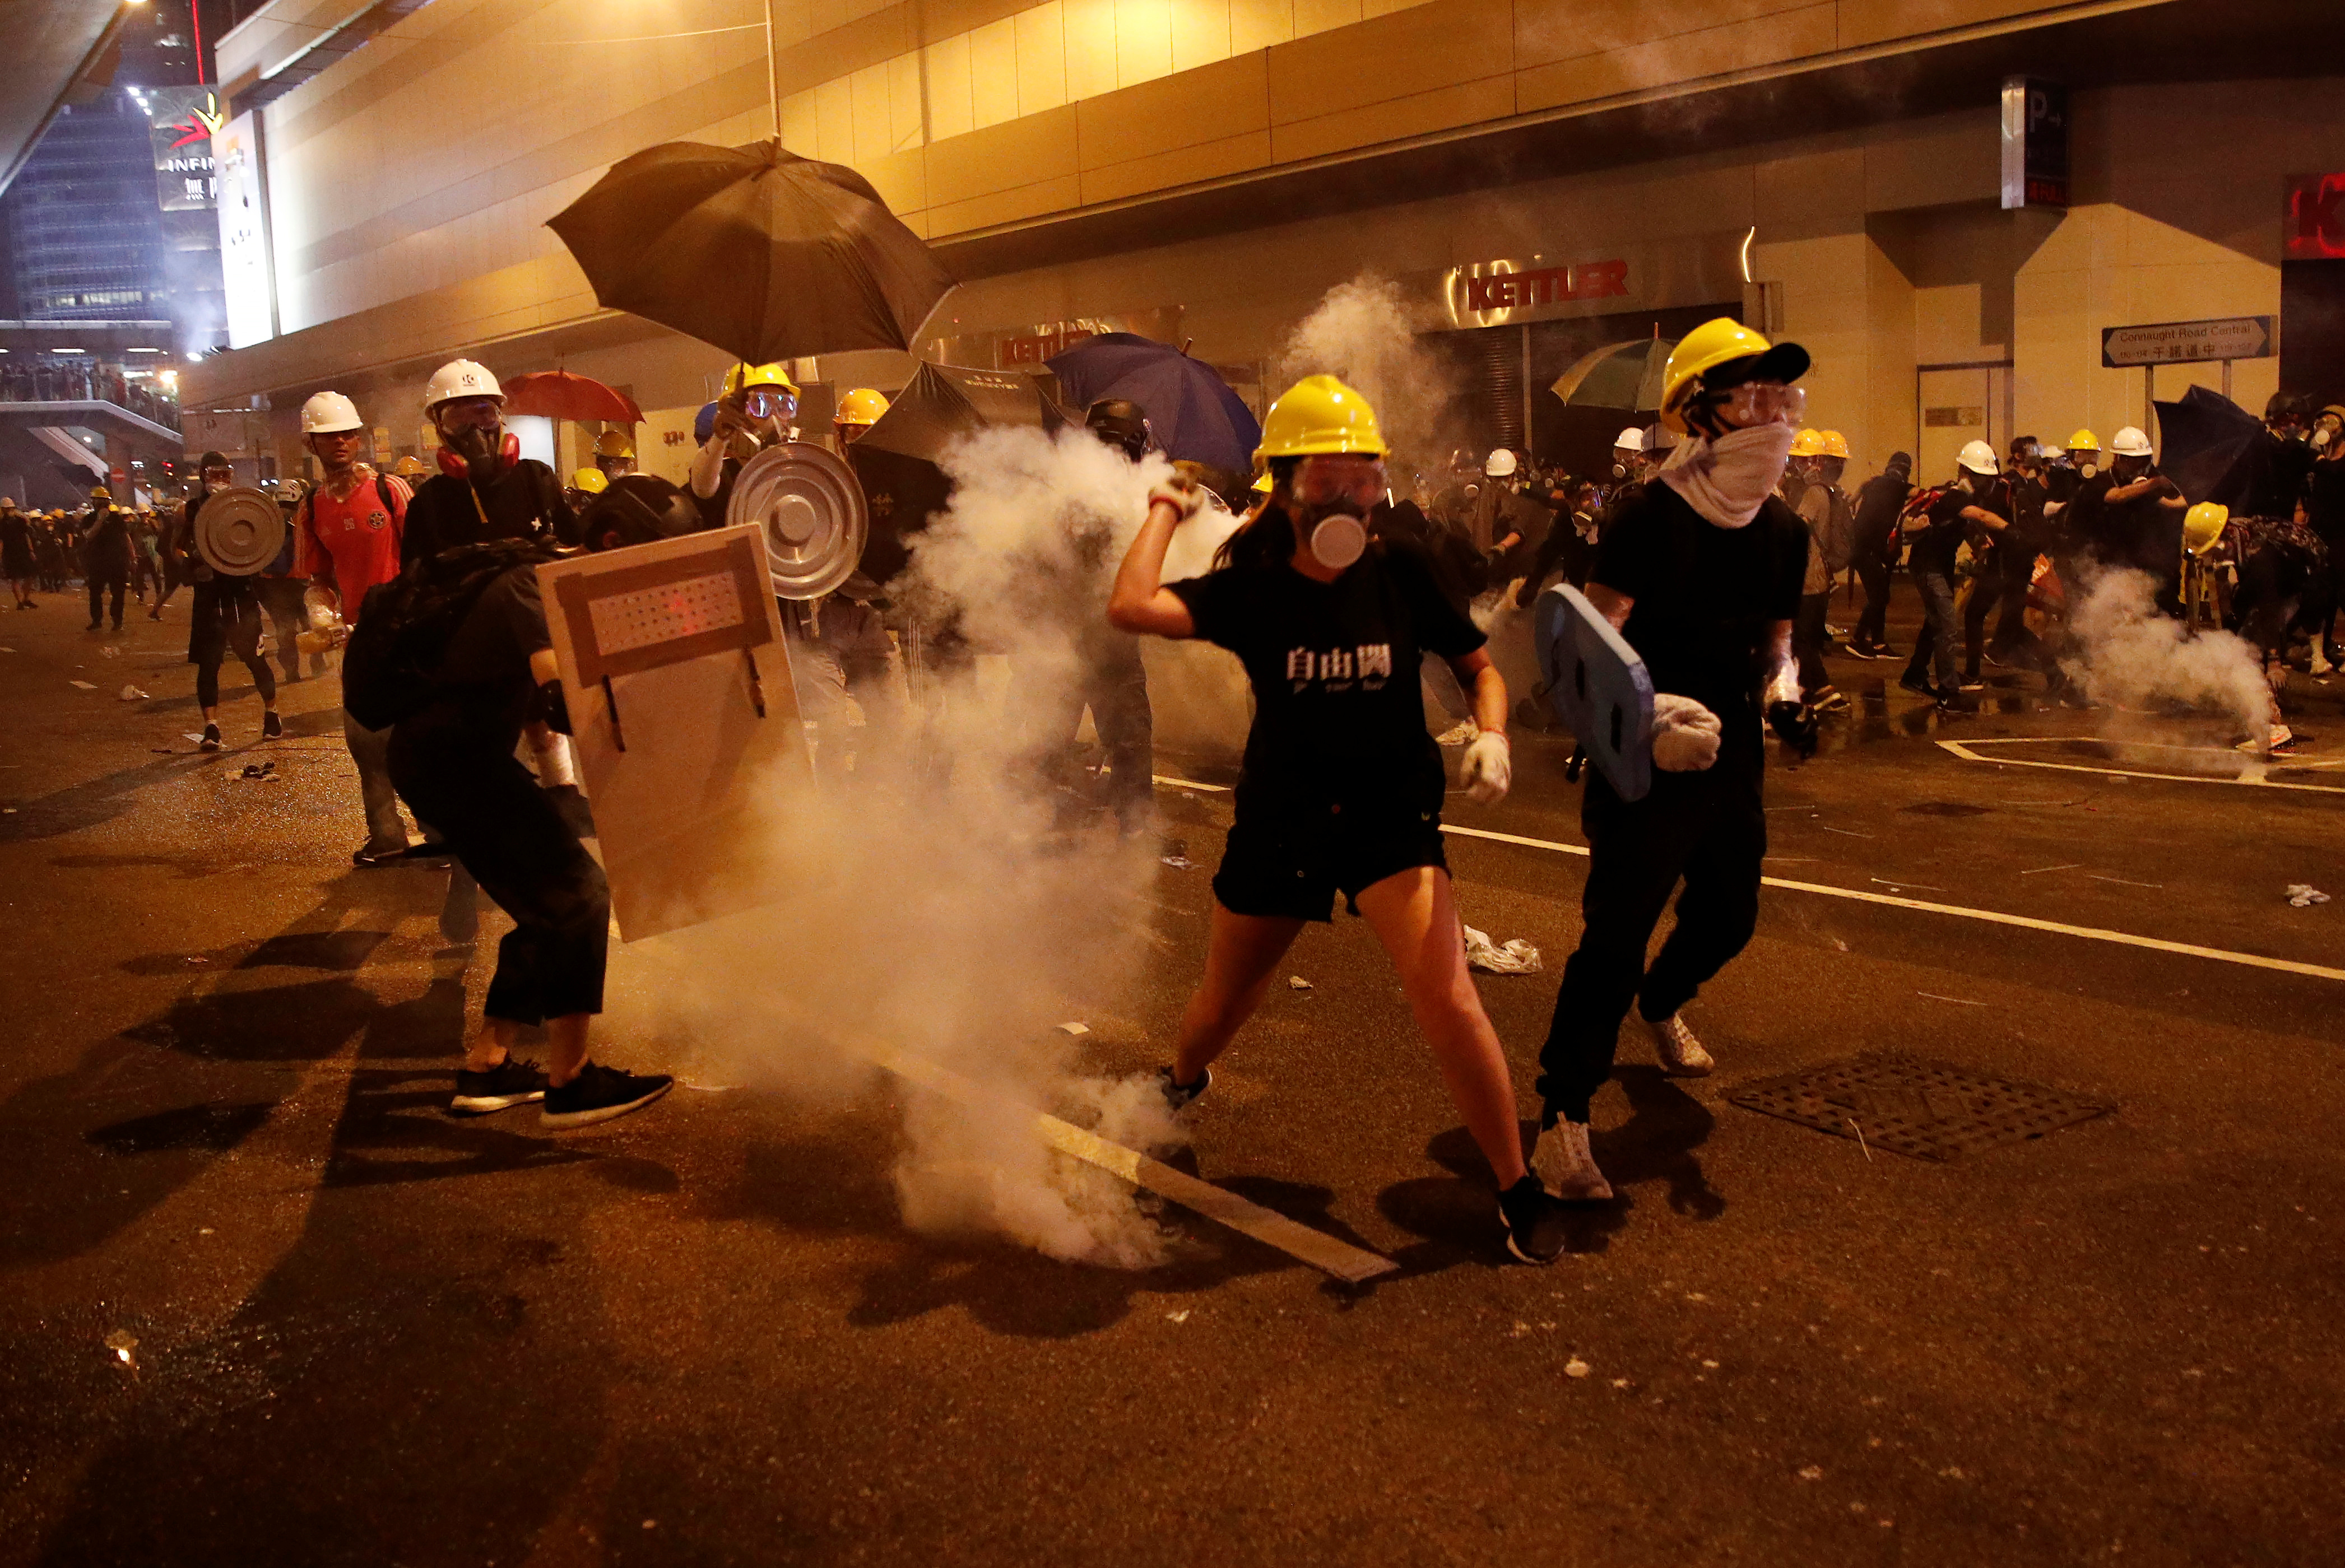 Hong Kong vuelve al caos con noche de incidentes entre manifestantes y la policía (Fotos)